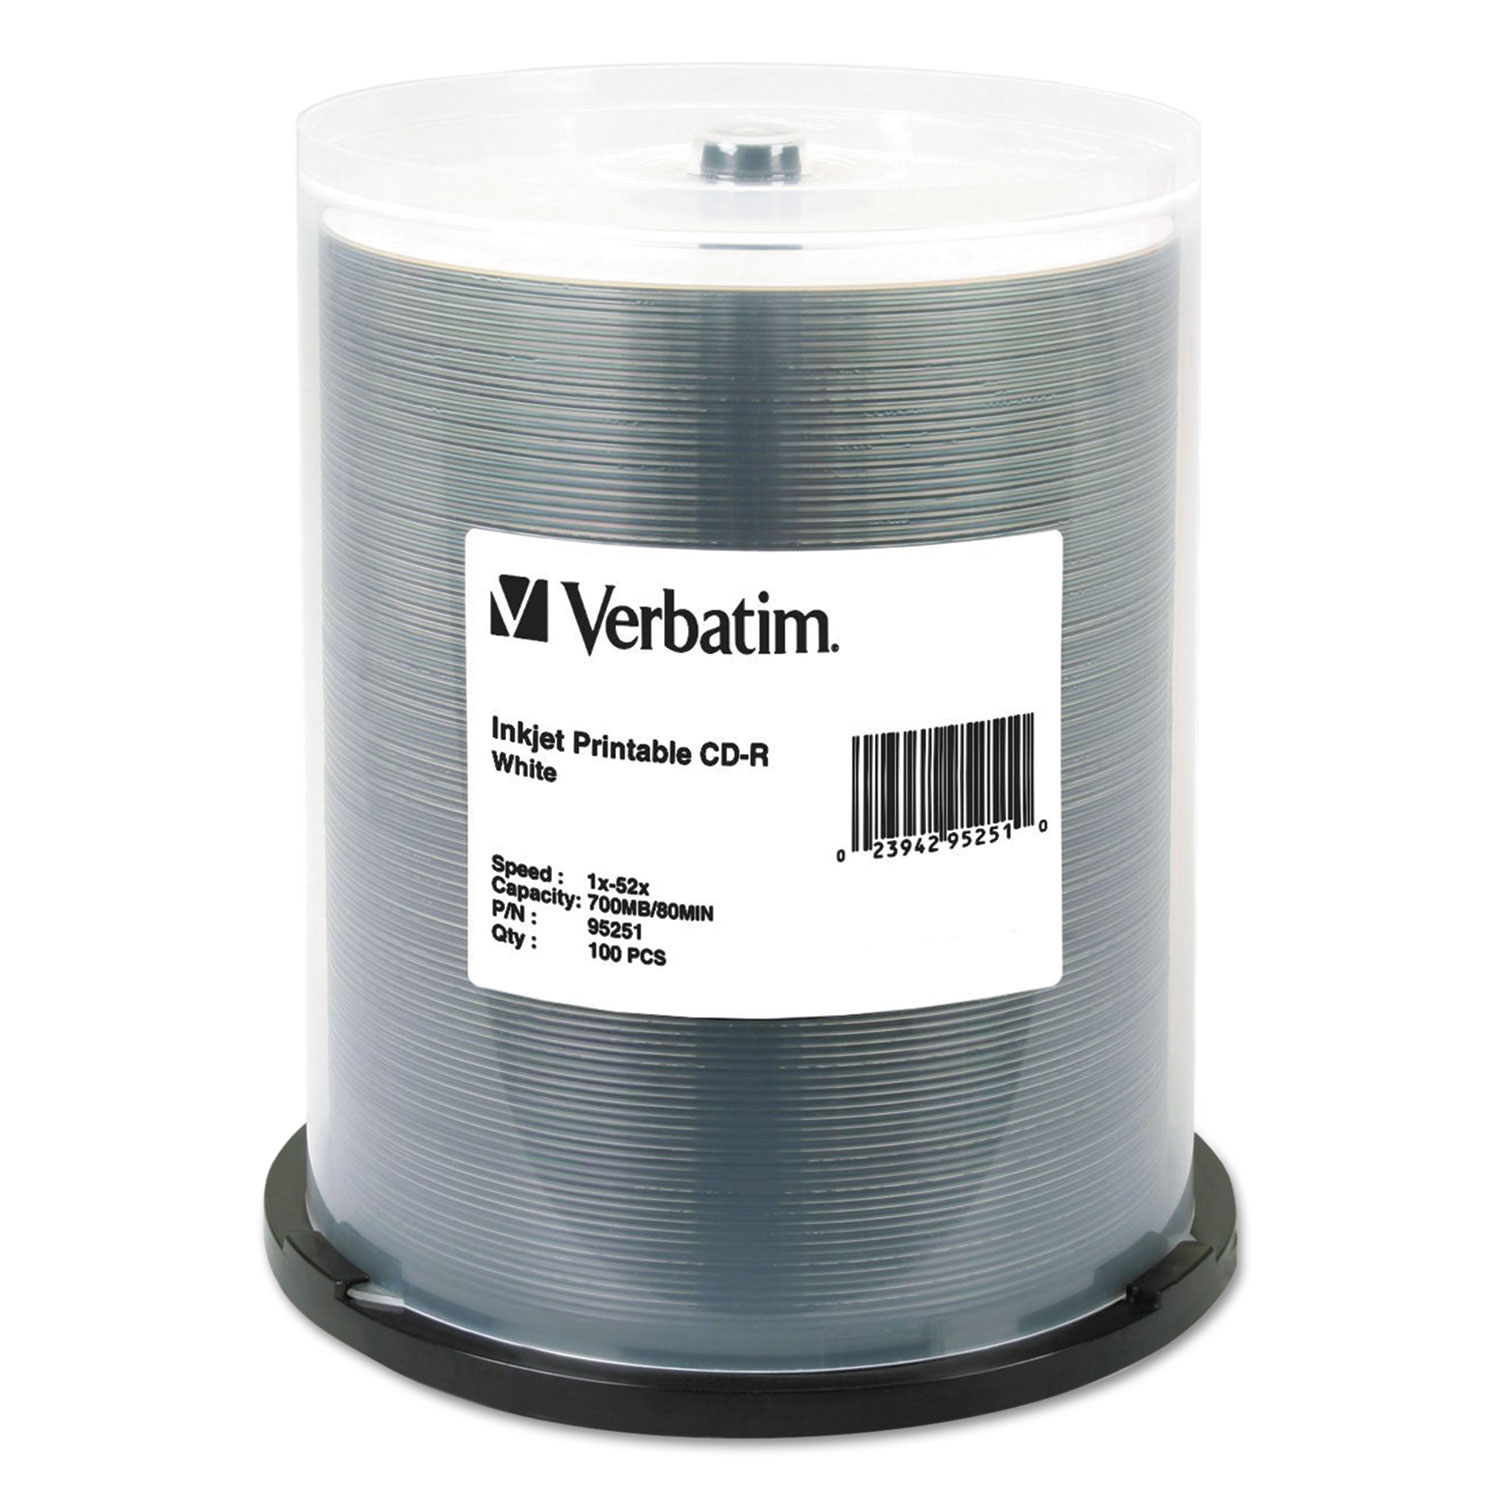  Verbatim 95251 CD-R, 700MB, 52X, White Inkjet Printable, 100/PK Spindle (VER95251) 